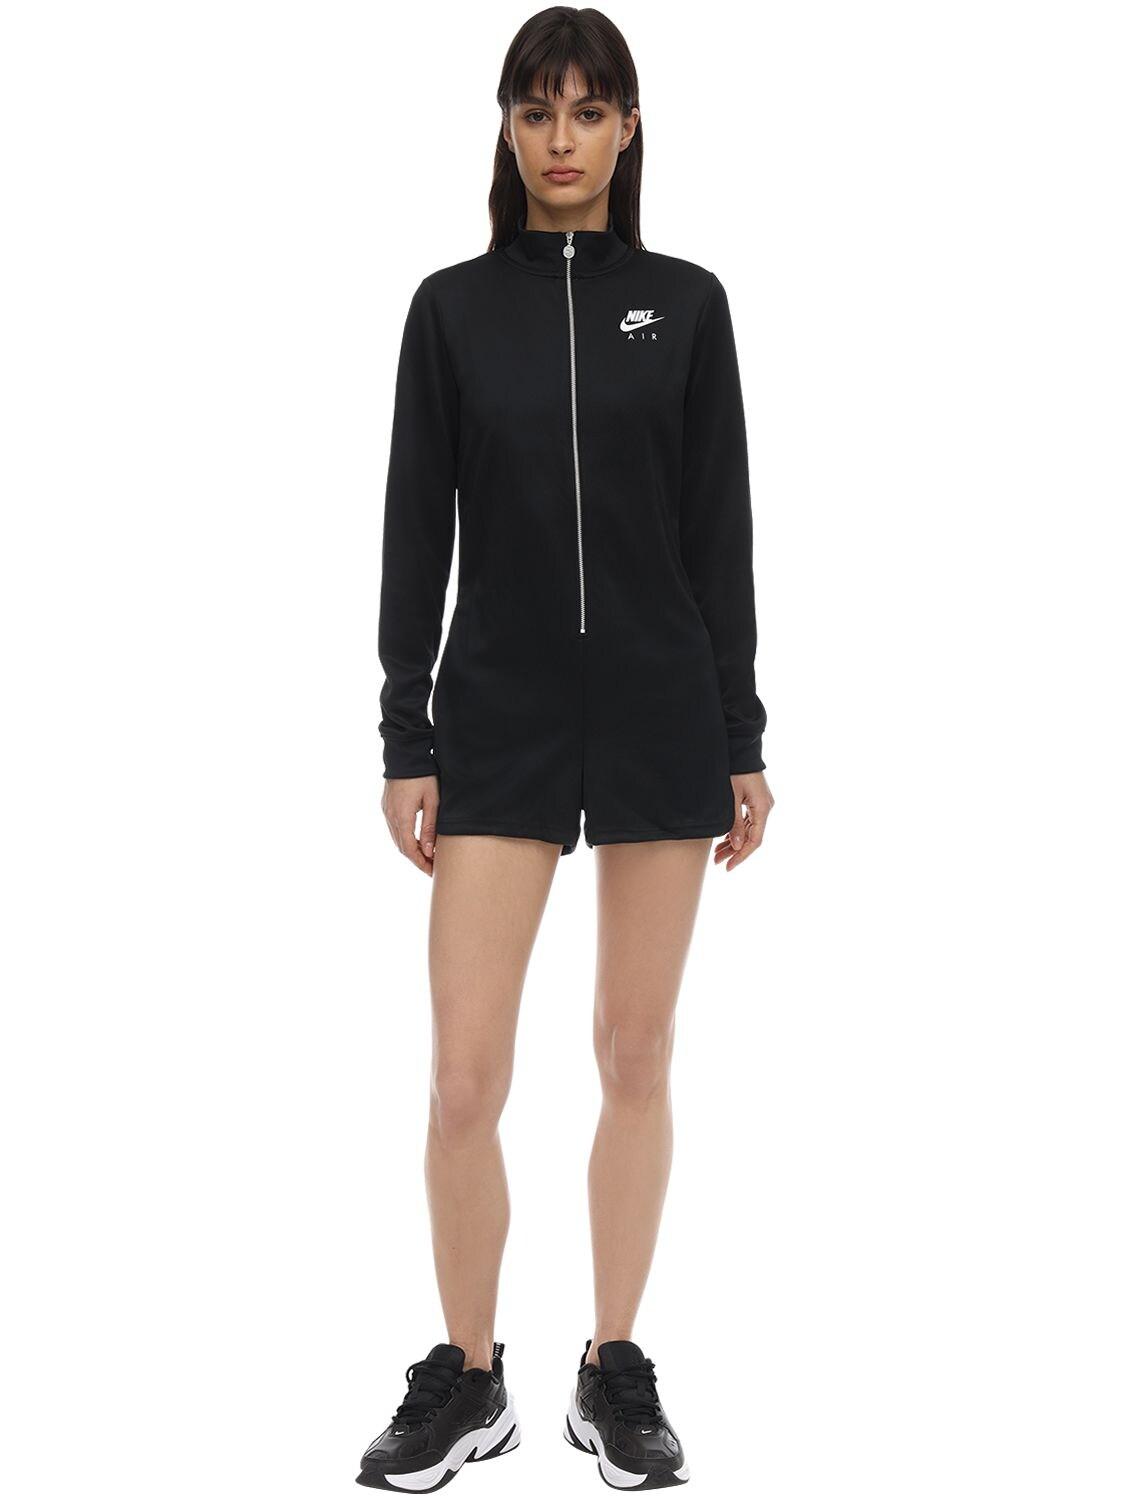 Nike Acetate Long Sleeve Jumpsuit in Black - Lyst